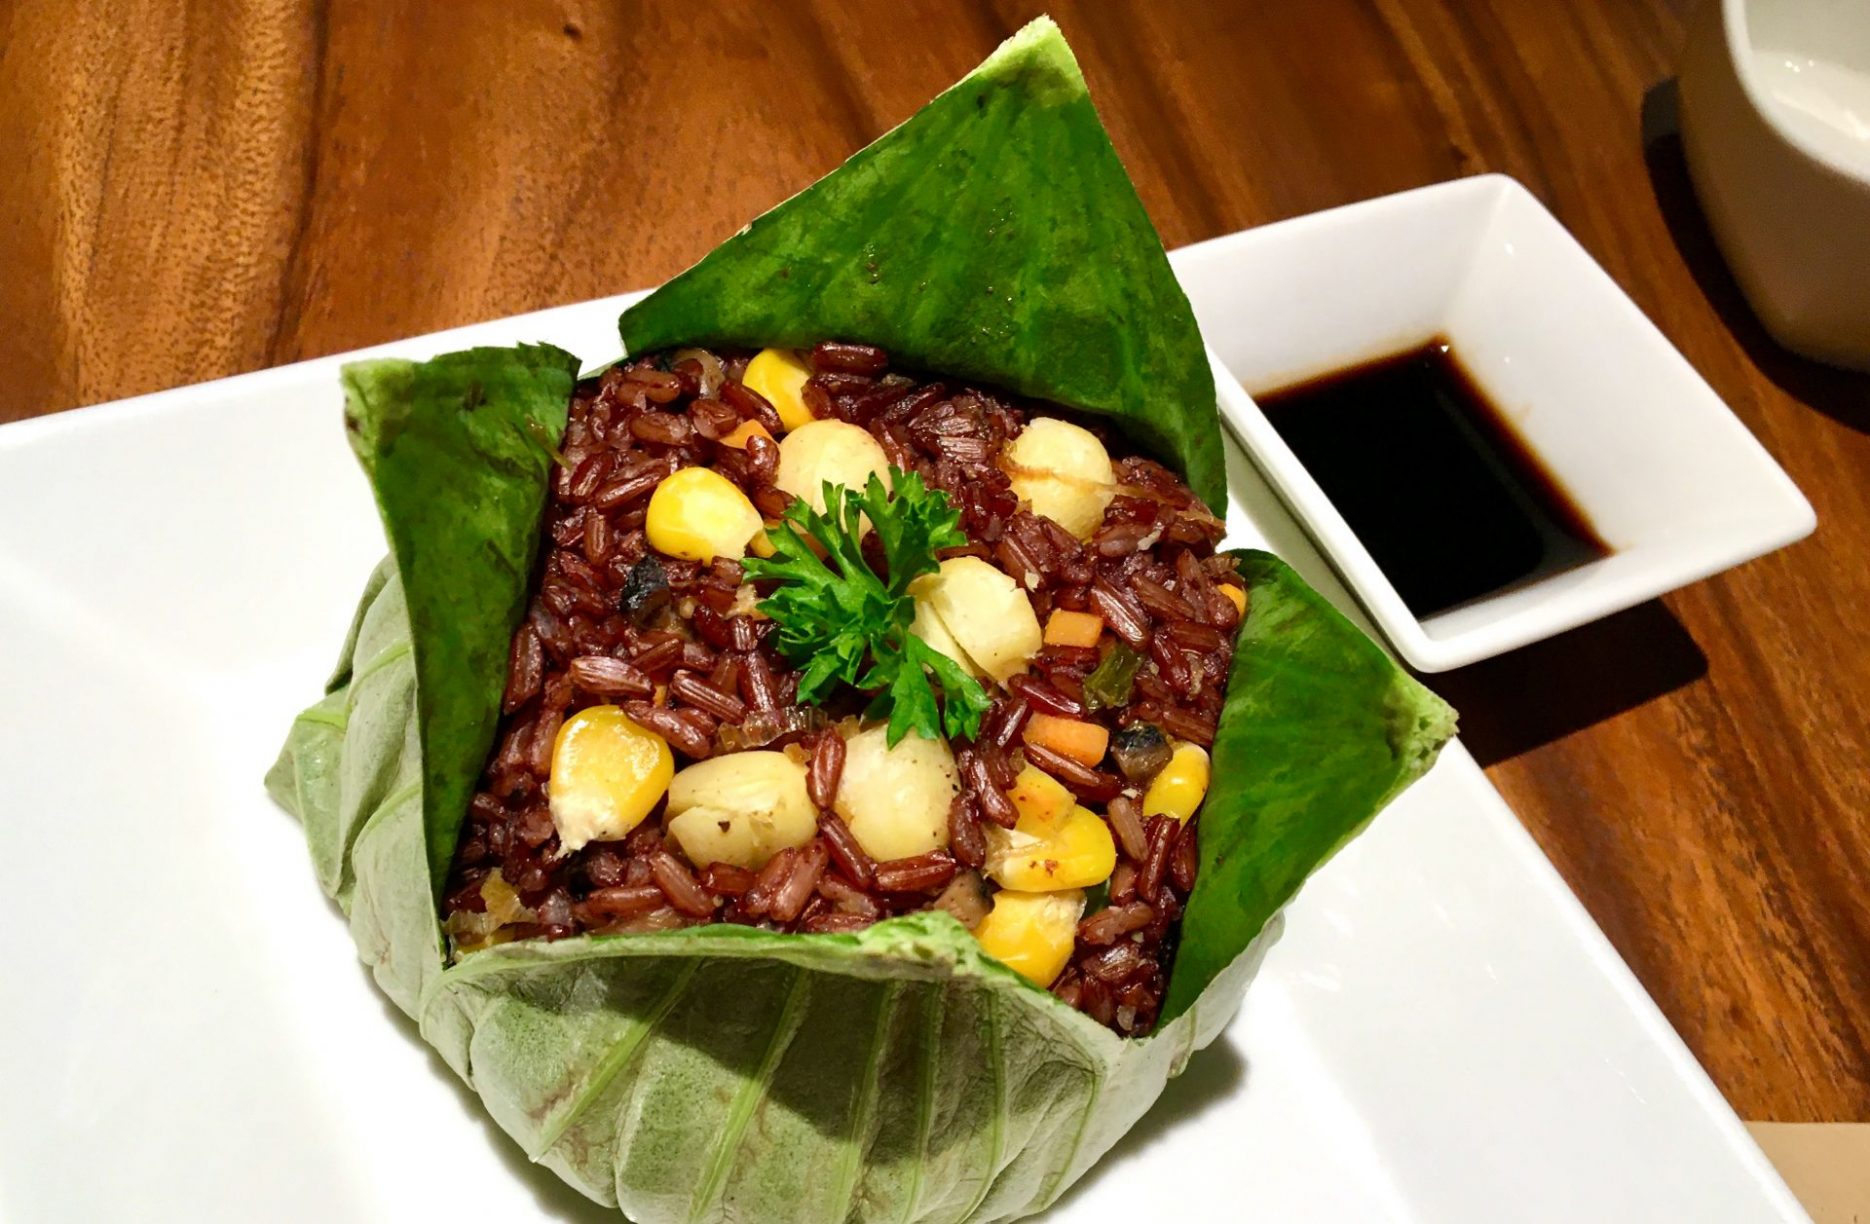 Cơm Lá Sen - Steamed Rice Meal Wrapped in a Lotus Leaf